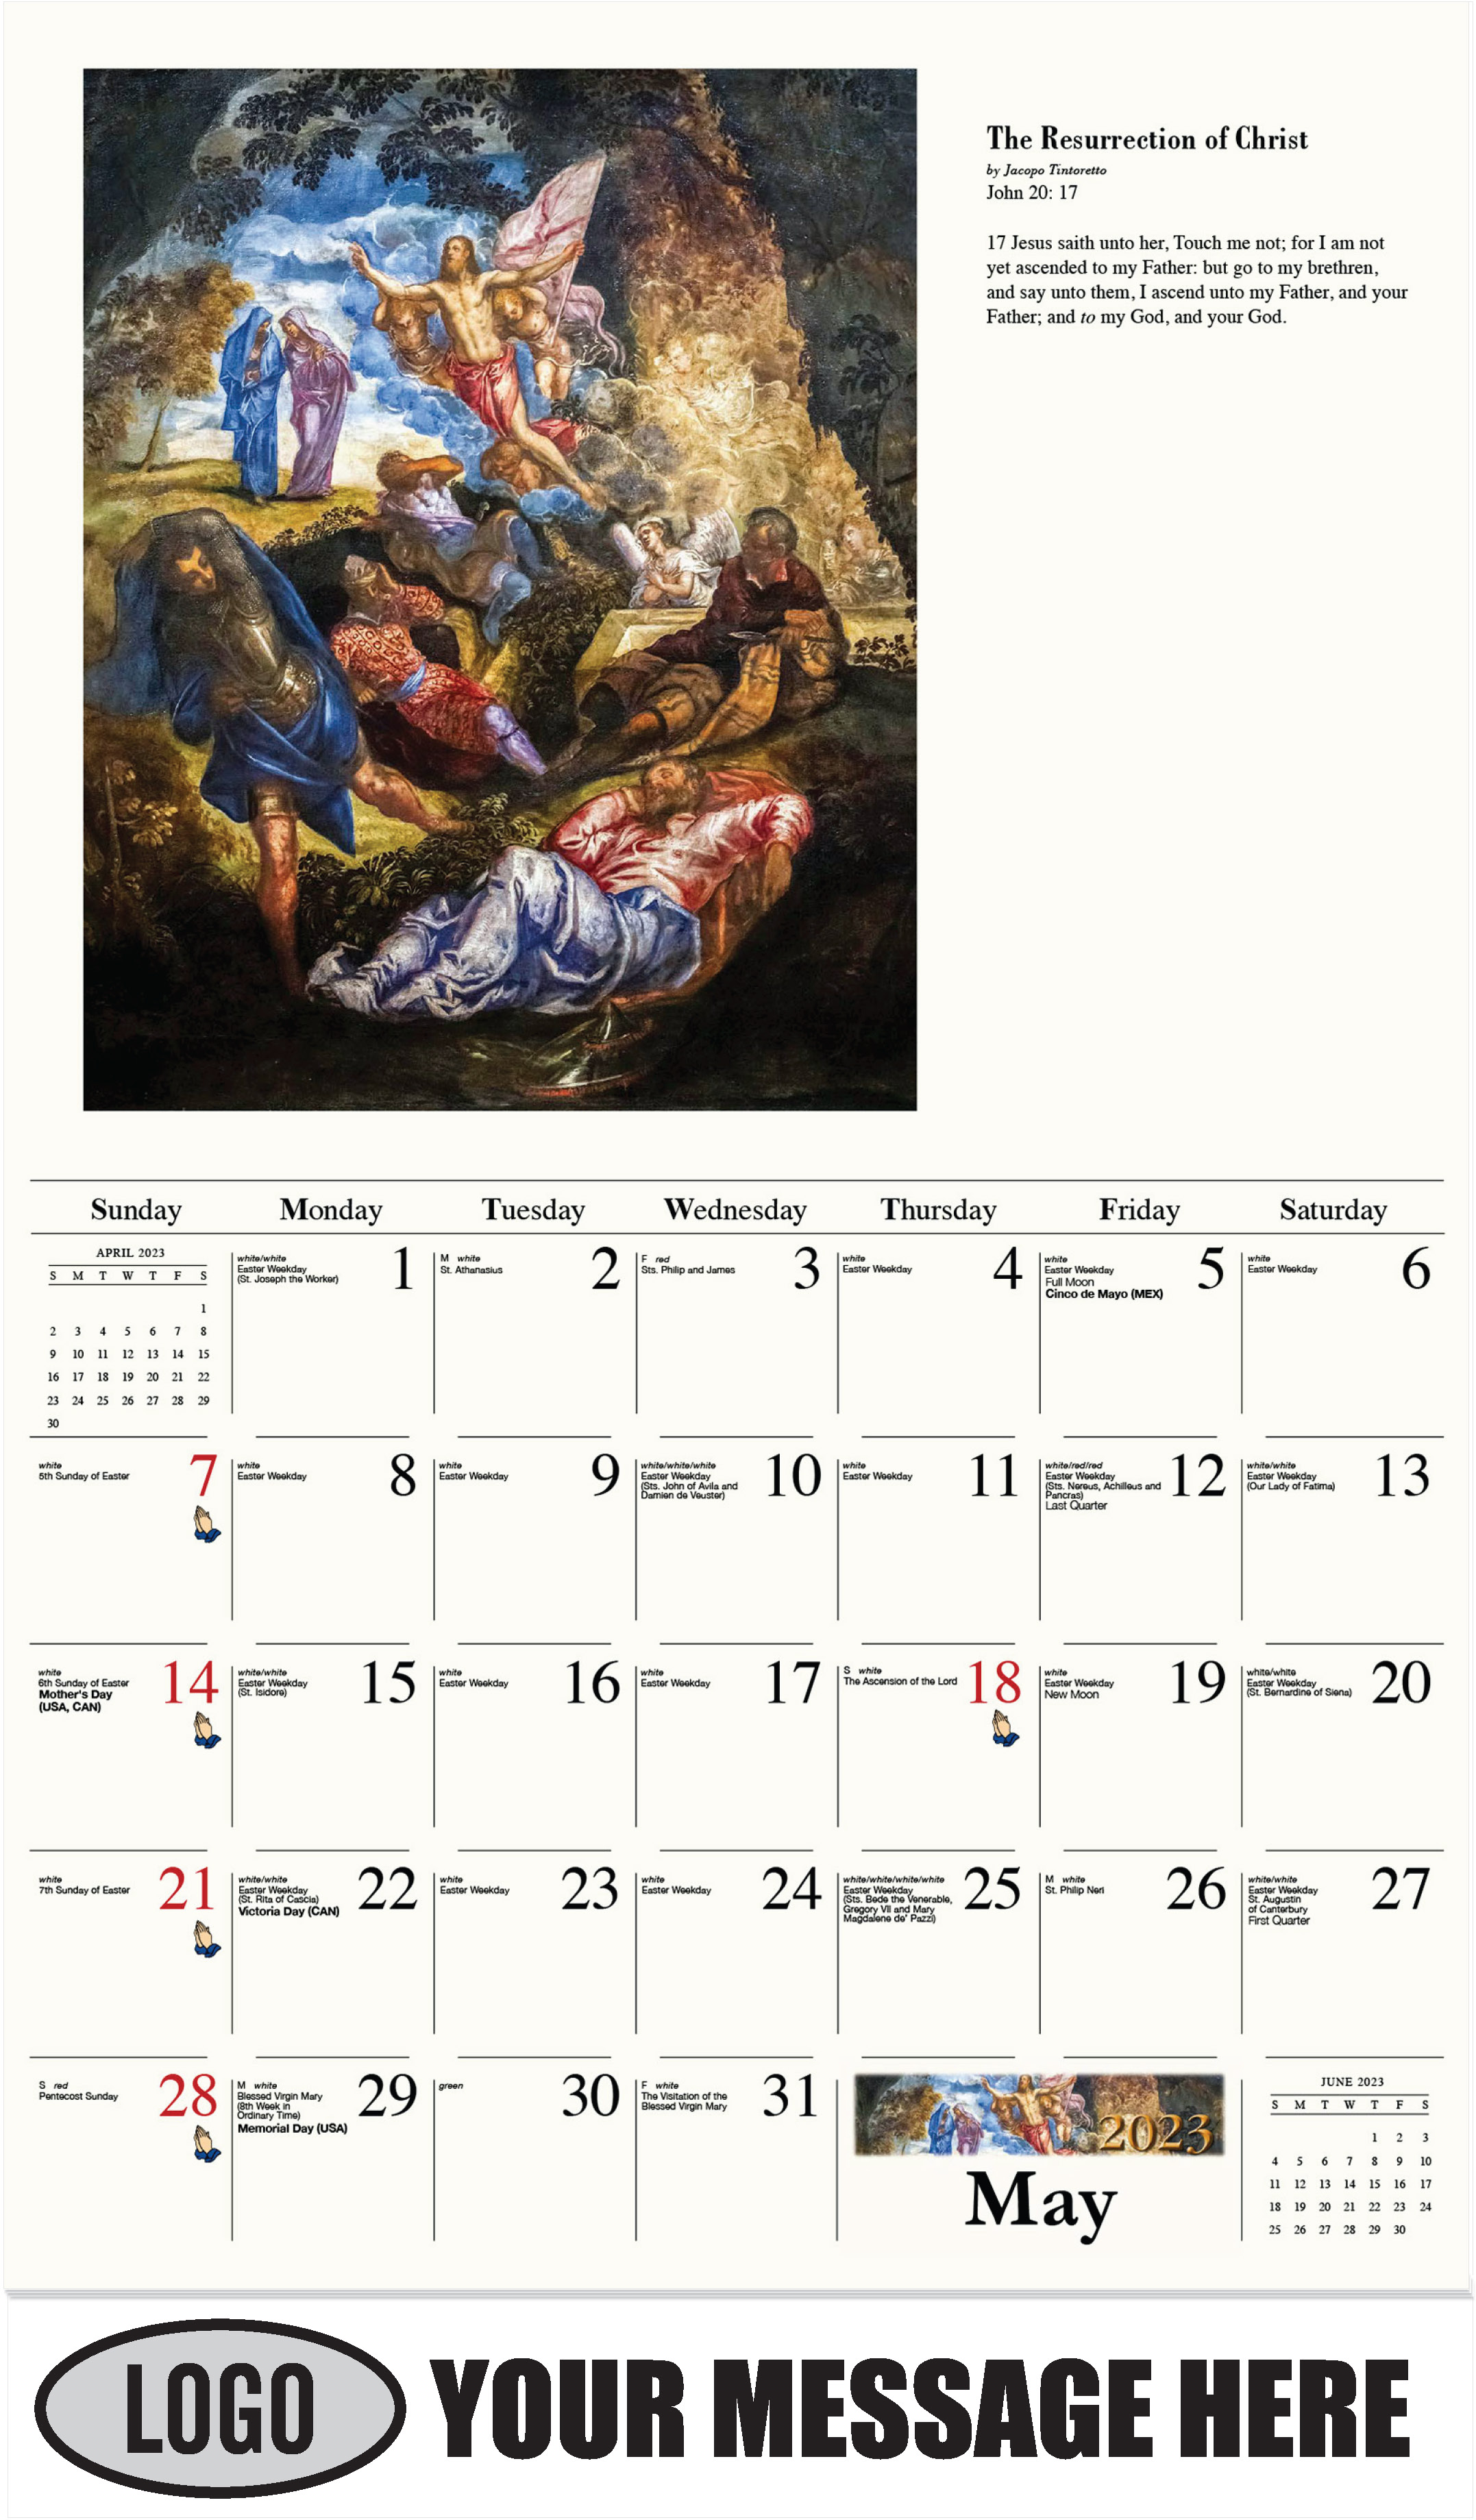 May - Catholic Inspiration 2023 Promotional Calendar